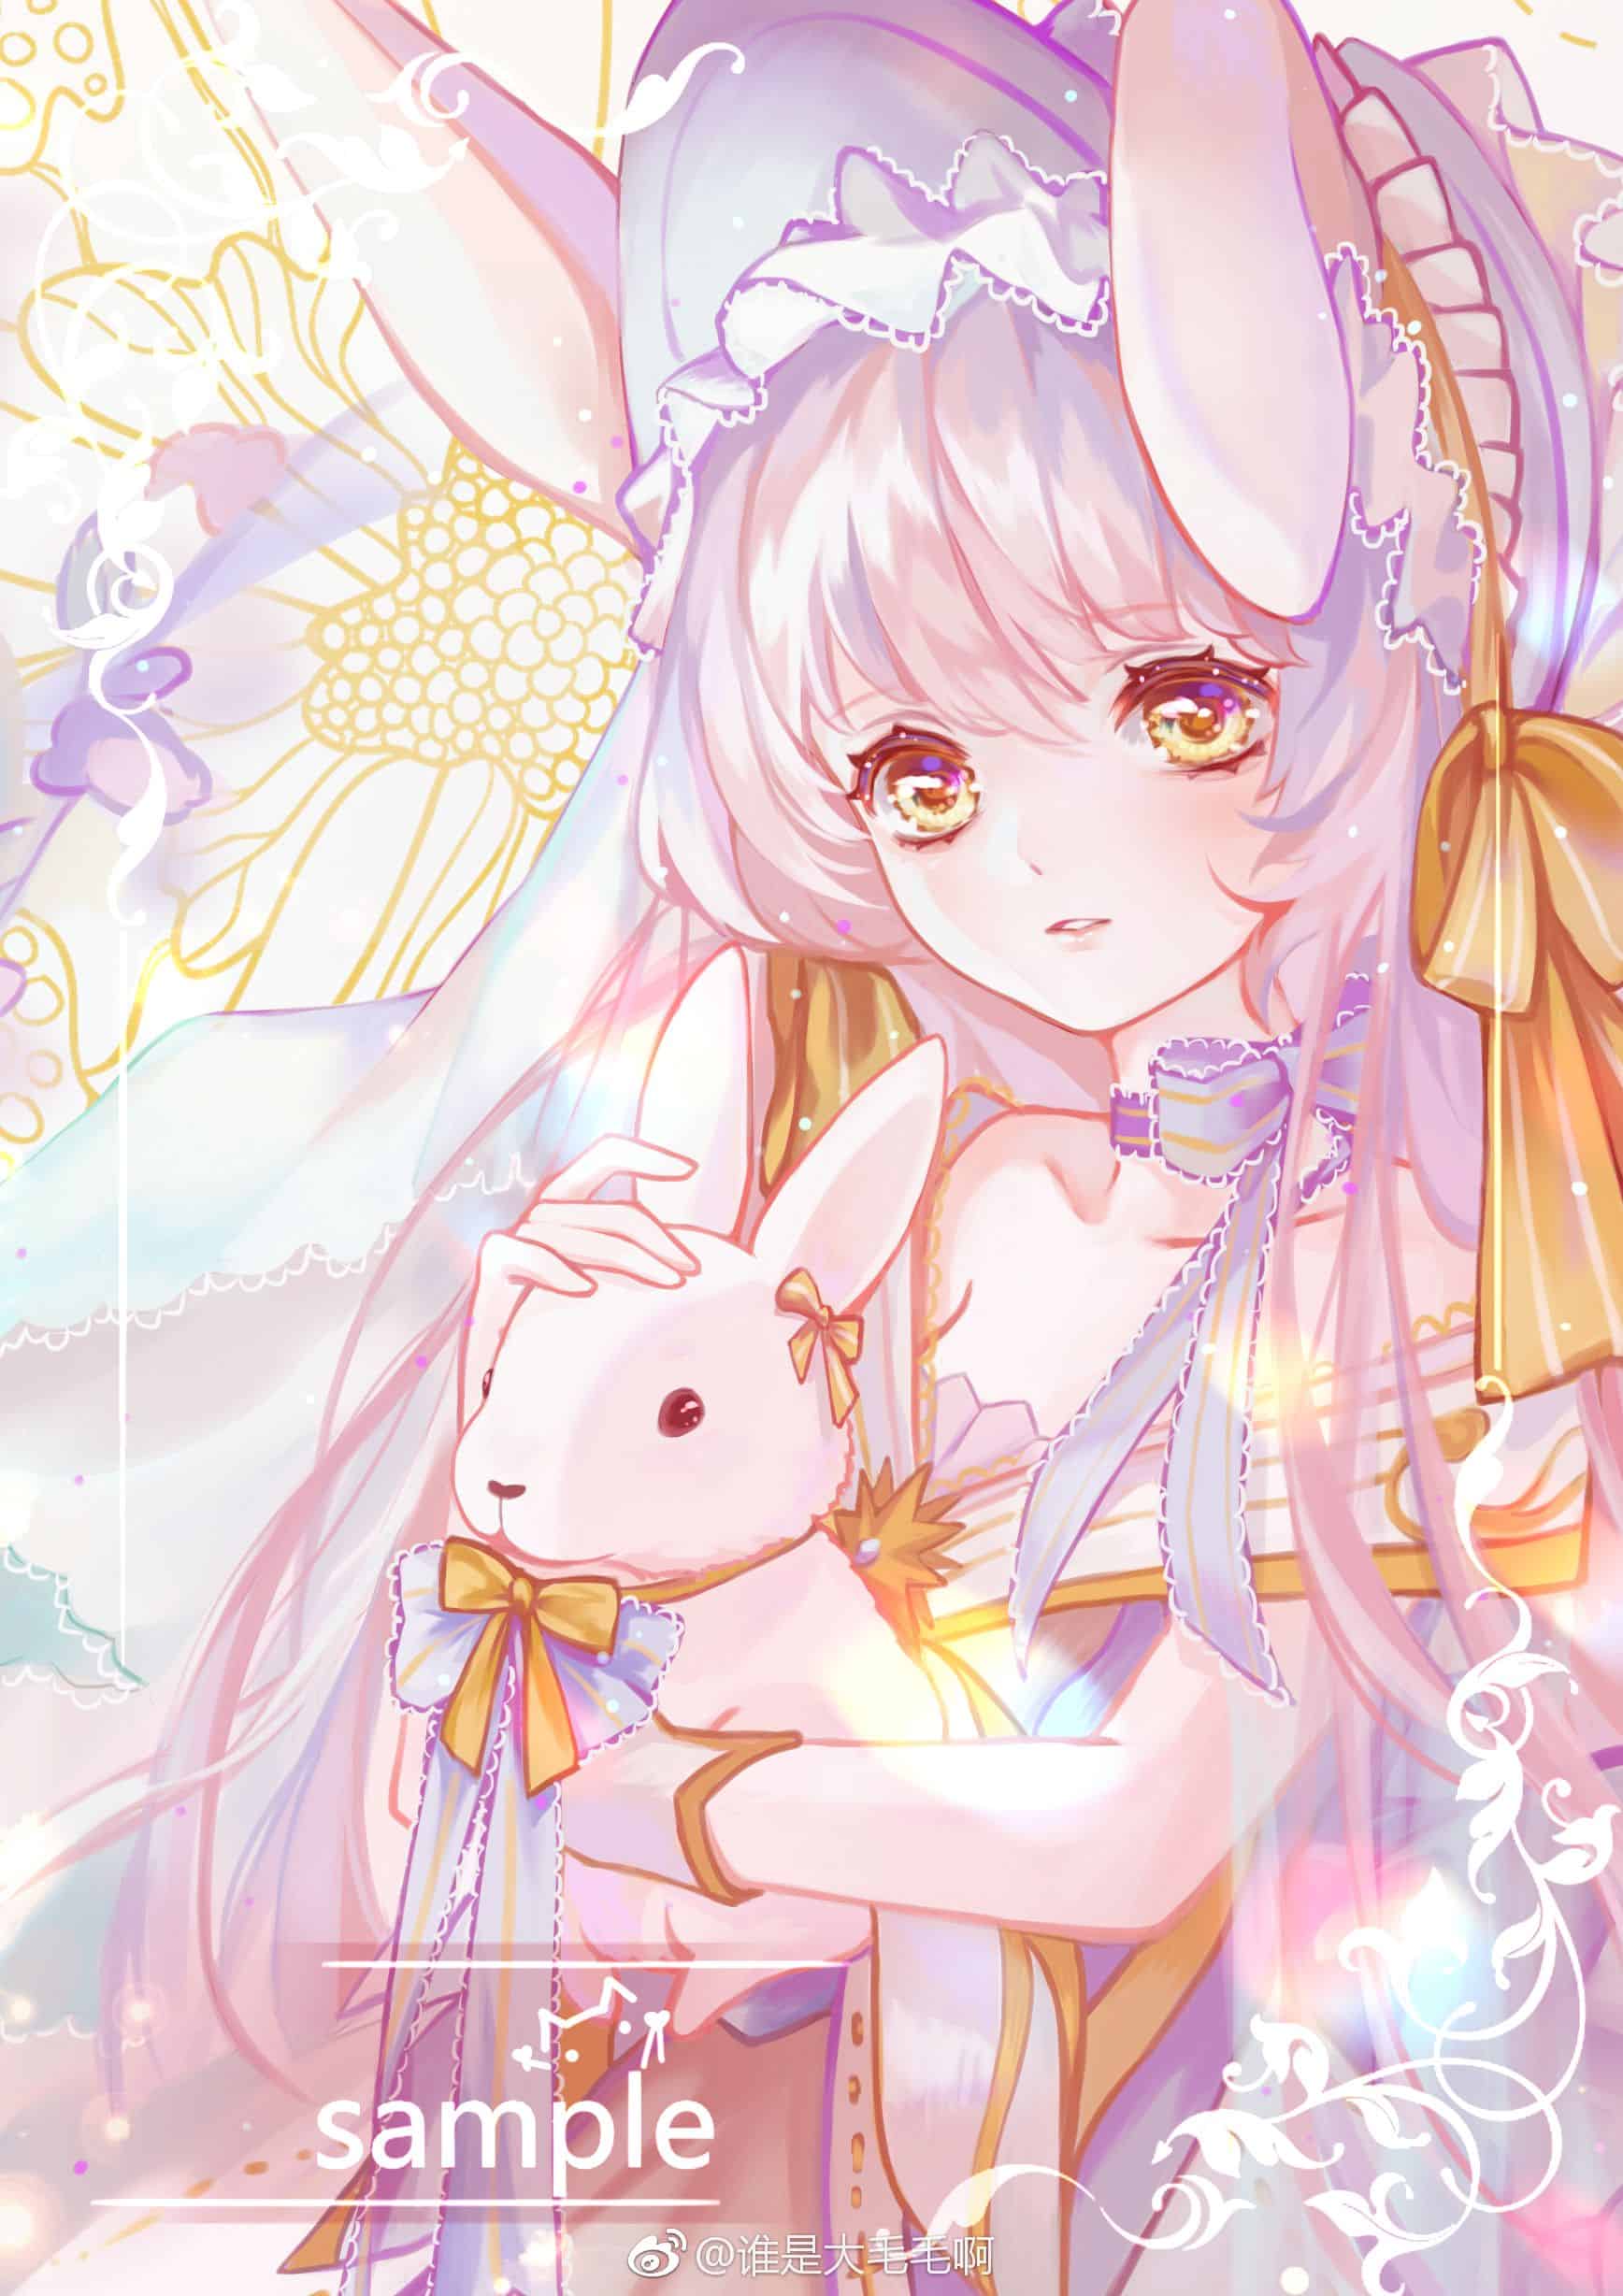 Vẽ Anime Thỏ Hoá Người Cute | Mê vẽ ANIME - YouTube